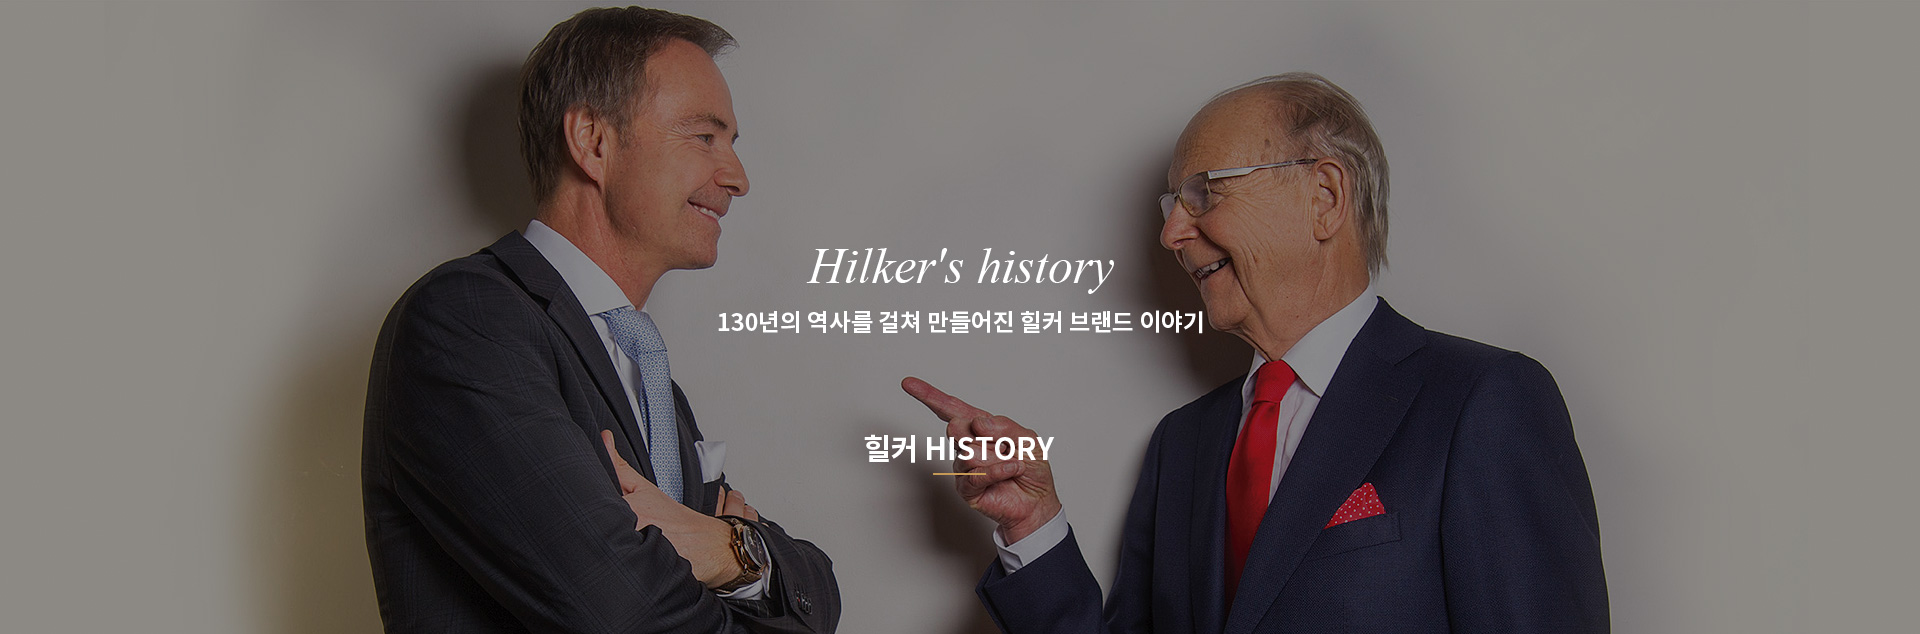 HILKER'HISTORY